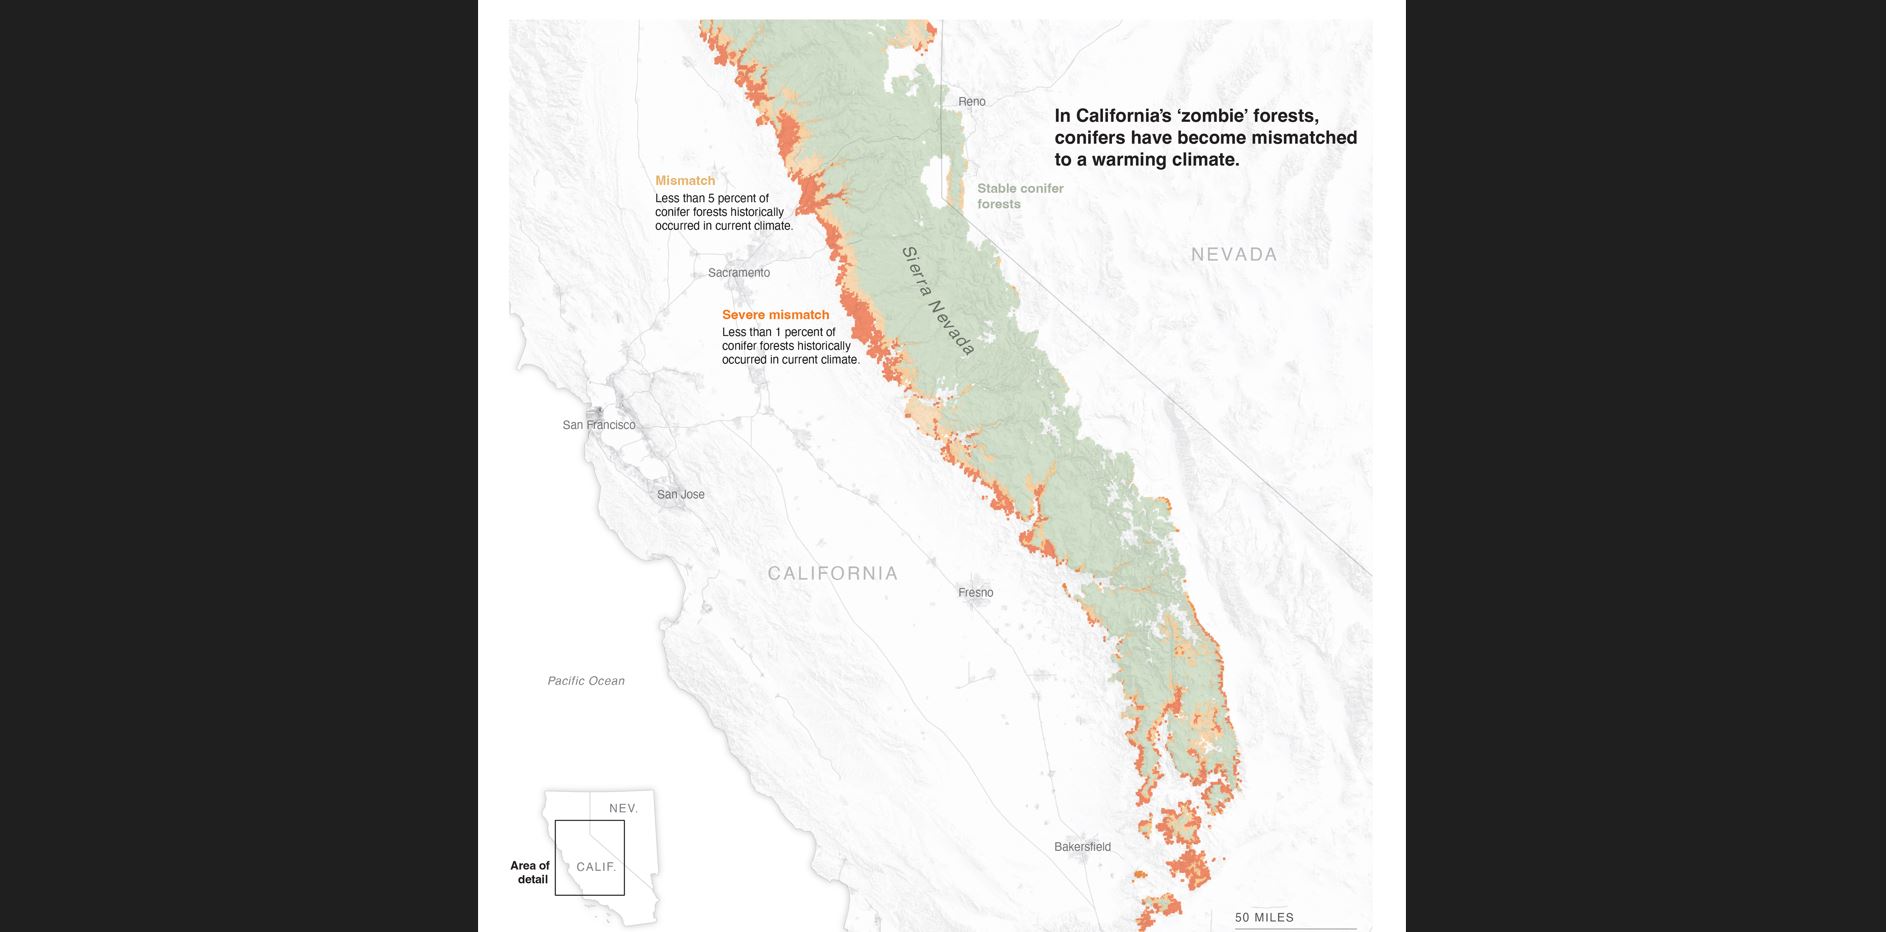 Un clima más cálido ha dejado a una quinta parte de los bosques de coníferas que cubren la Sierra Nevada de California varados en hábitats que ya no les convienen, según un estudio publicado la semana pasada por investigadores de la Universidad de Stanford.